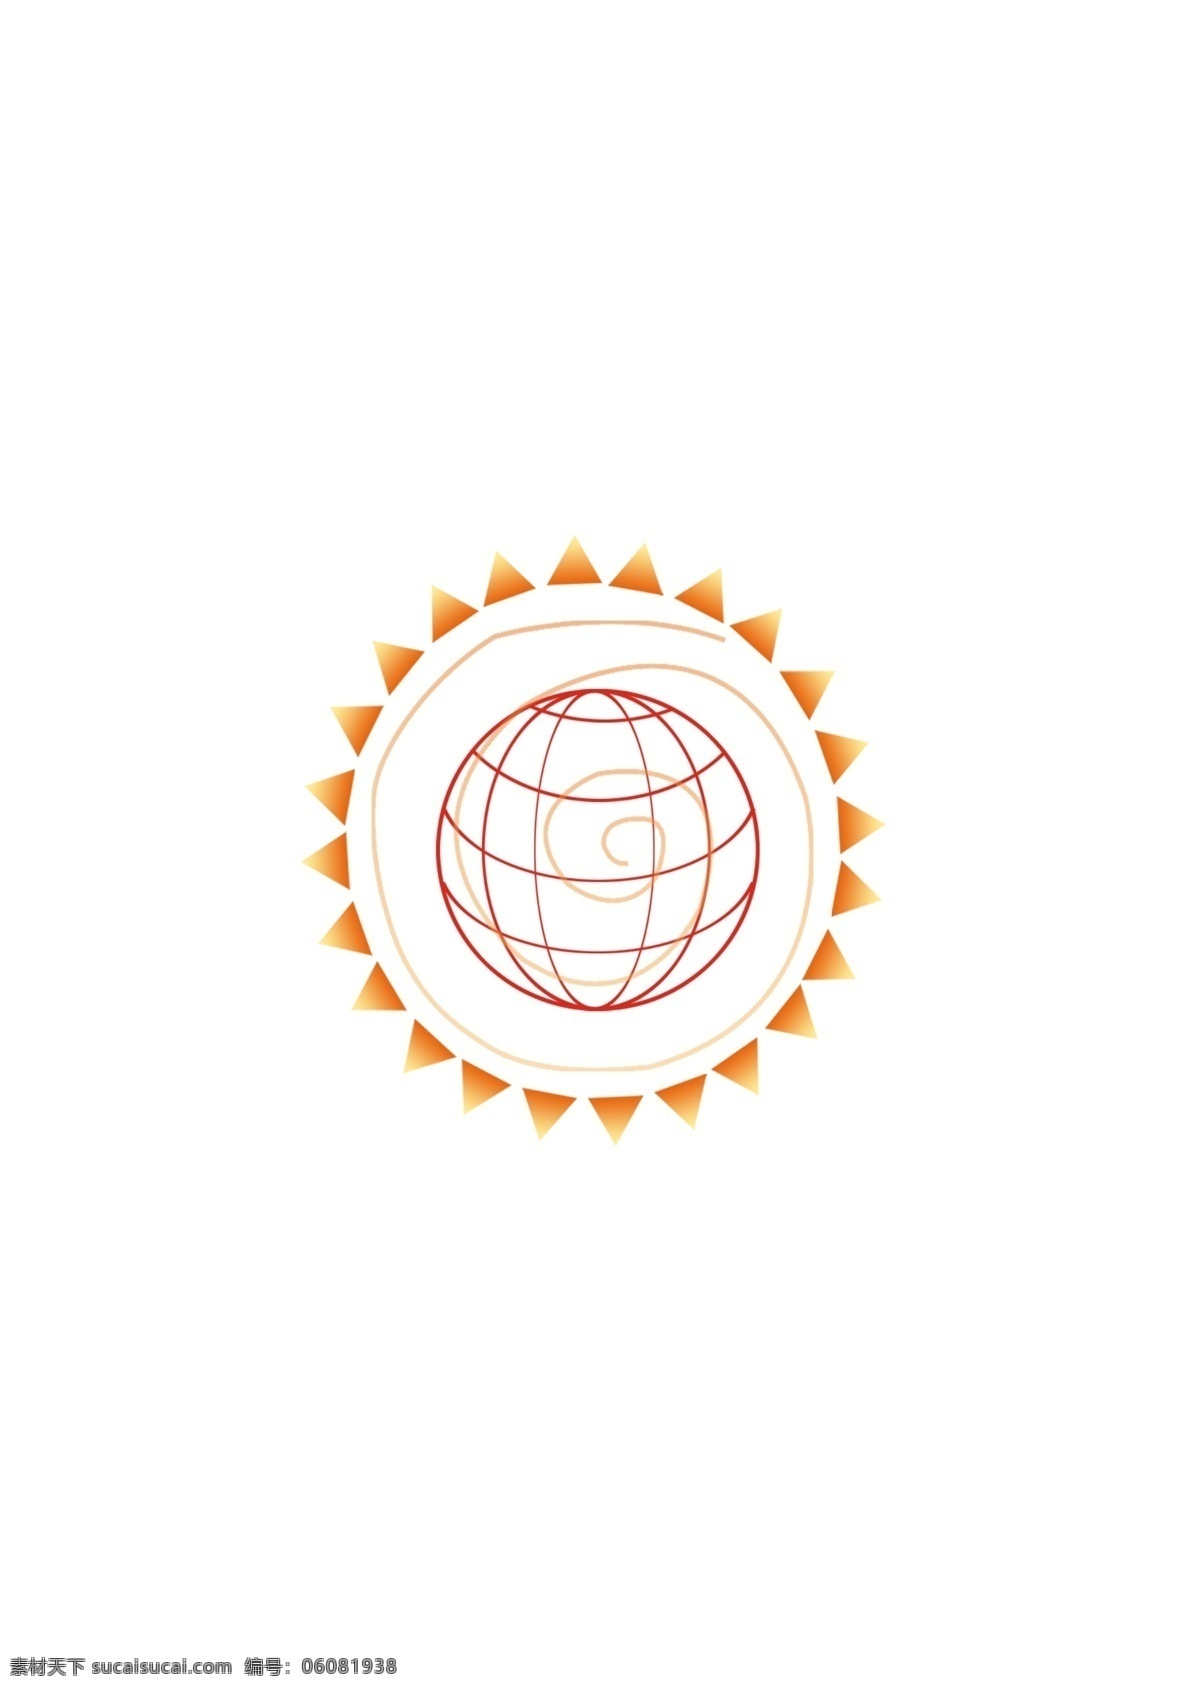 国际金融 logo 国际logo 地球logo 地球 标志设计 广告设计模板 源文件